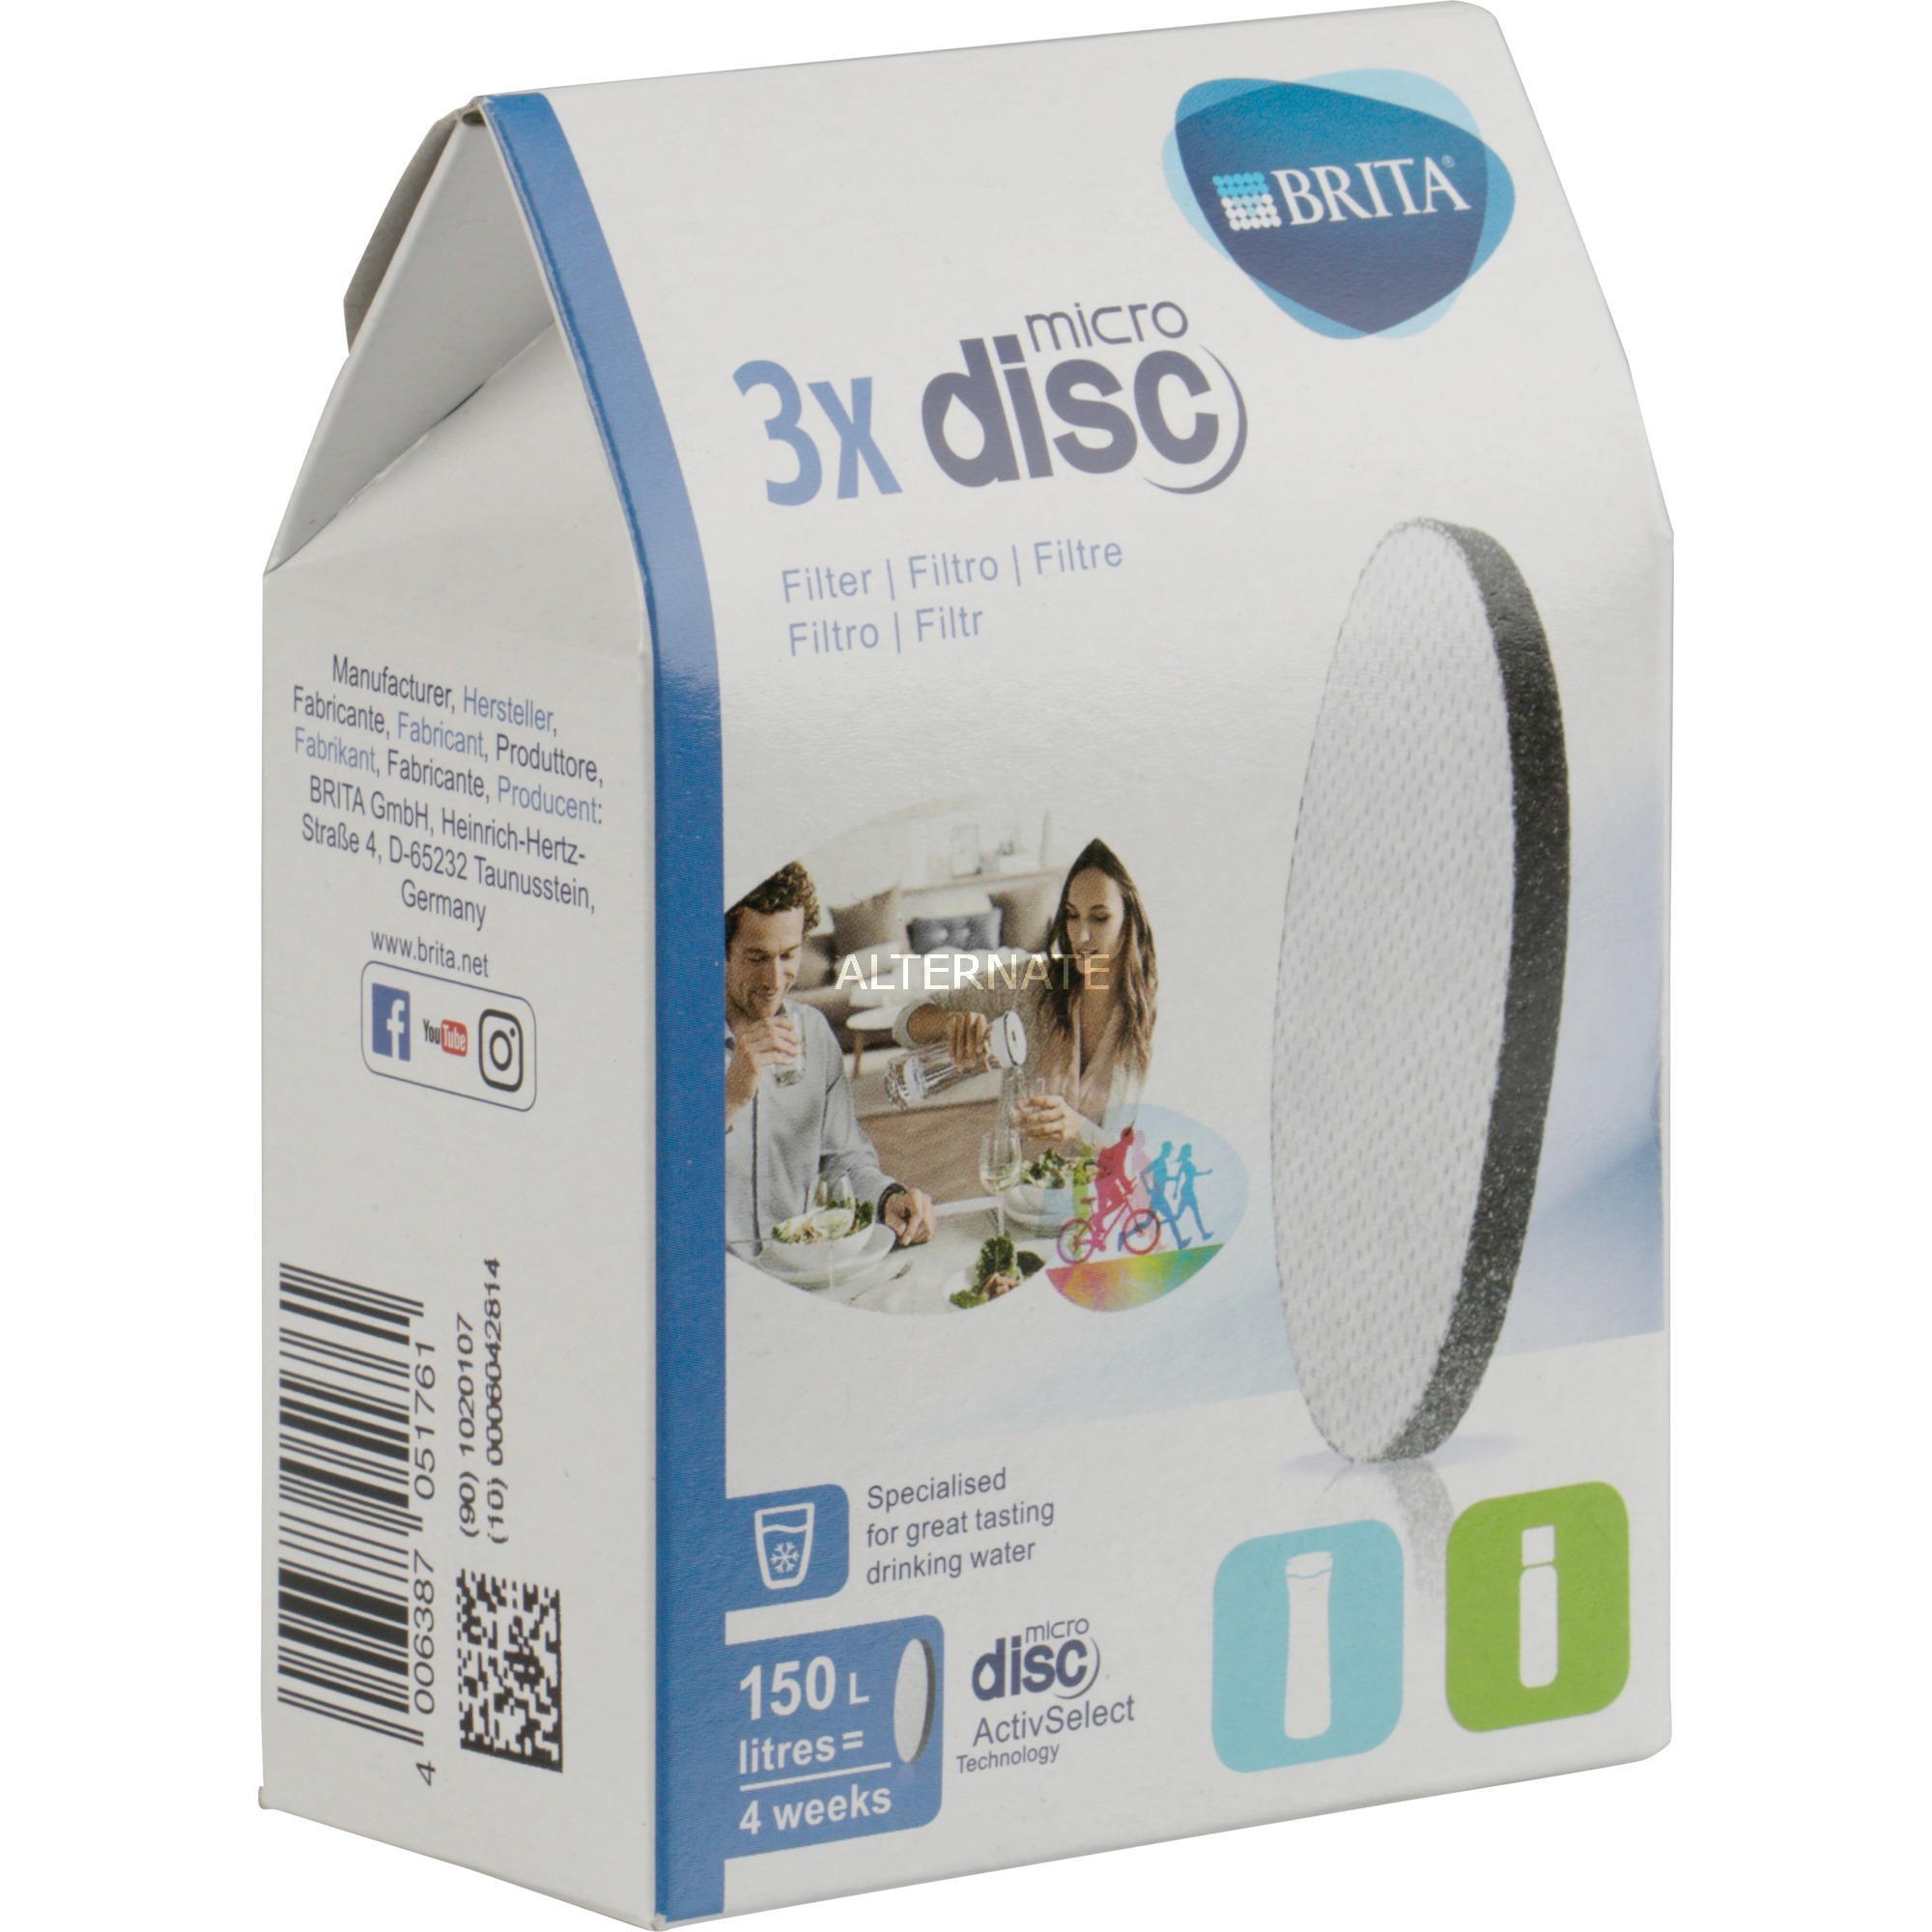 Image of Alternate - MicroDisc Filter 3er Pack, Wasserfilter online einkaufen bei Alternate